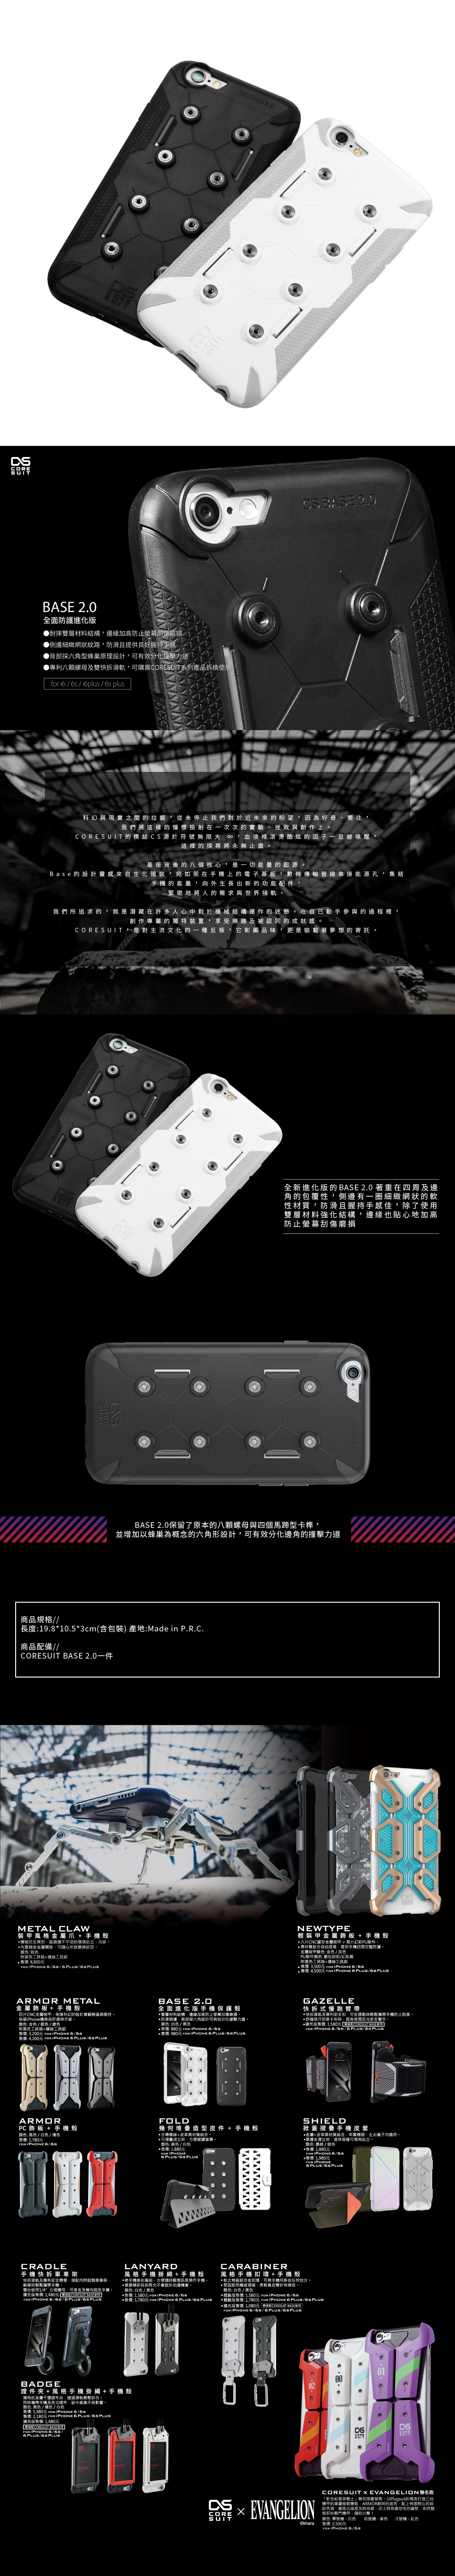 CORESUIT BASE 2.0 全面進化版手機保護殼 iPhone 6/6s 白色